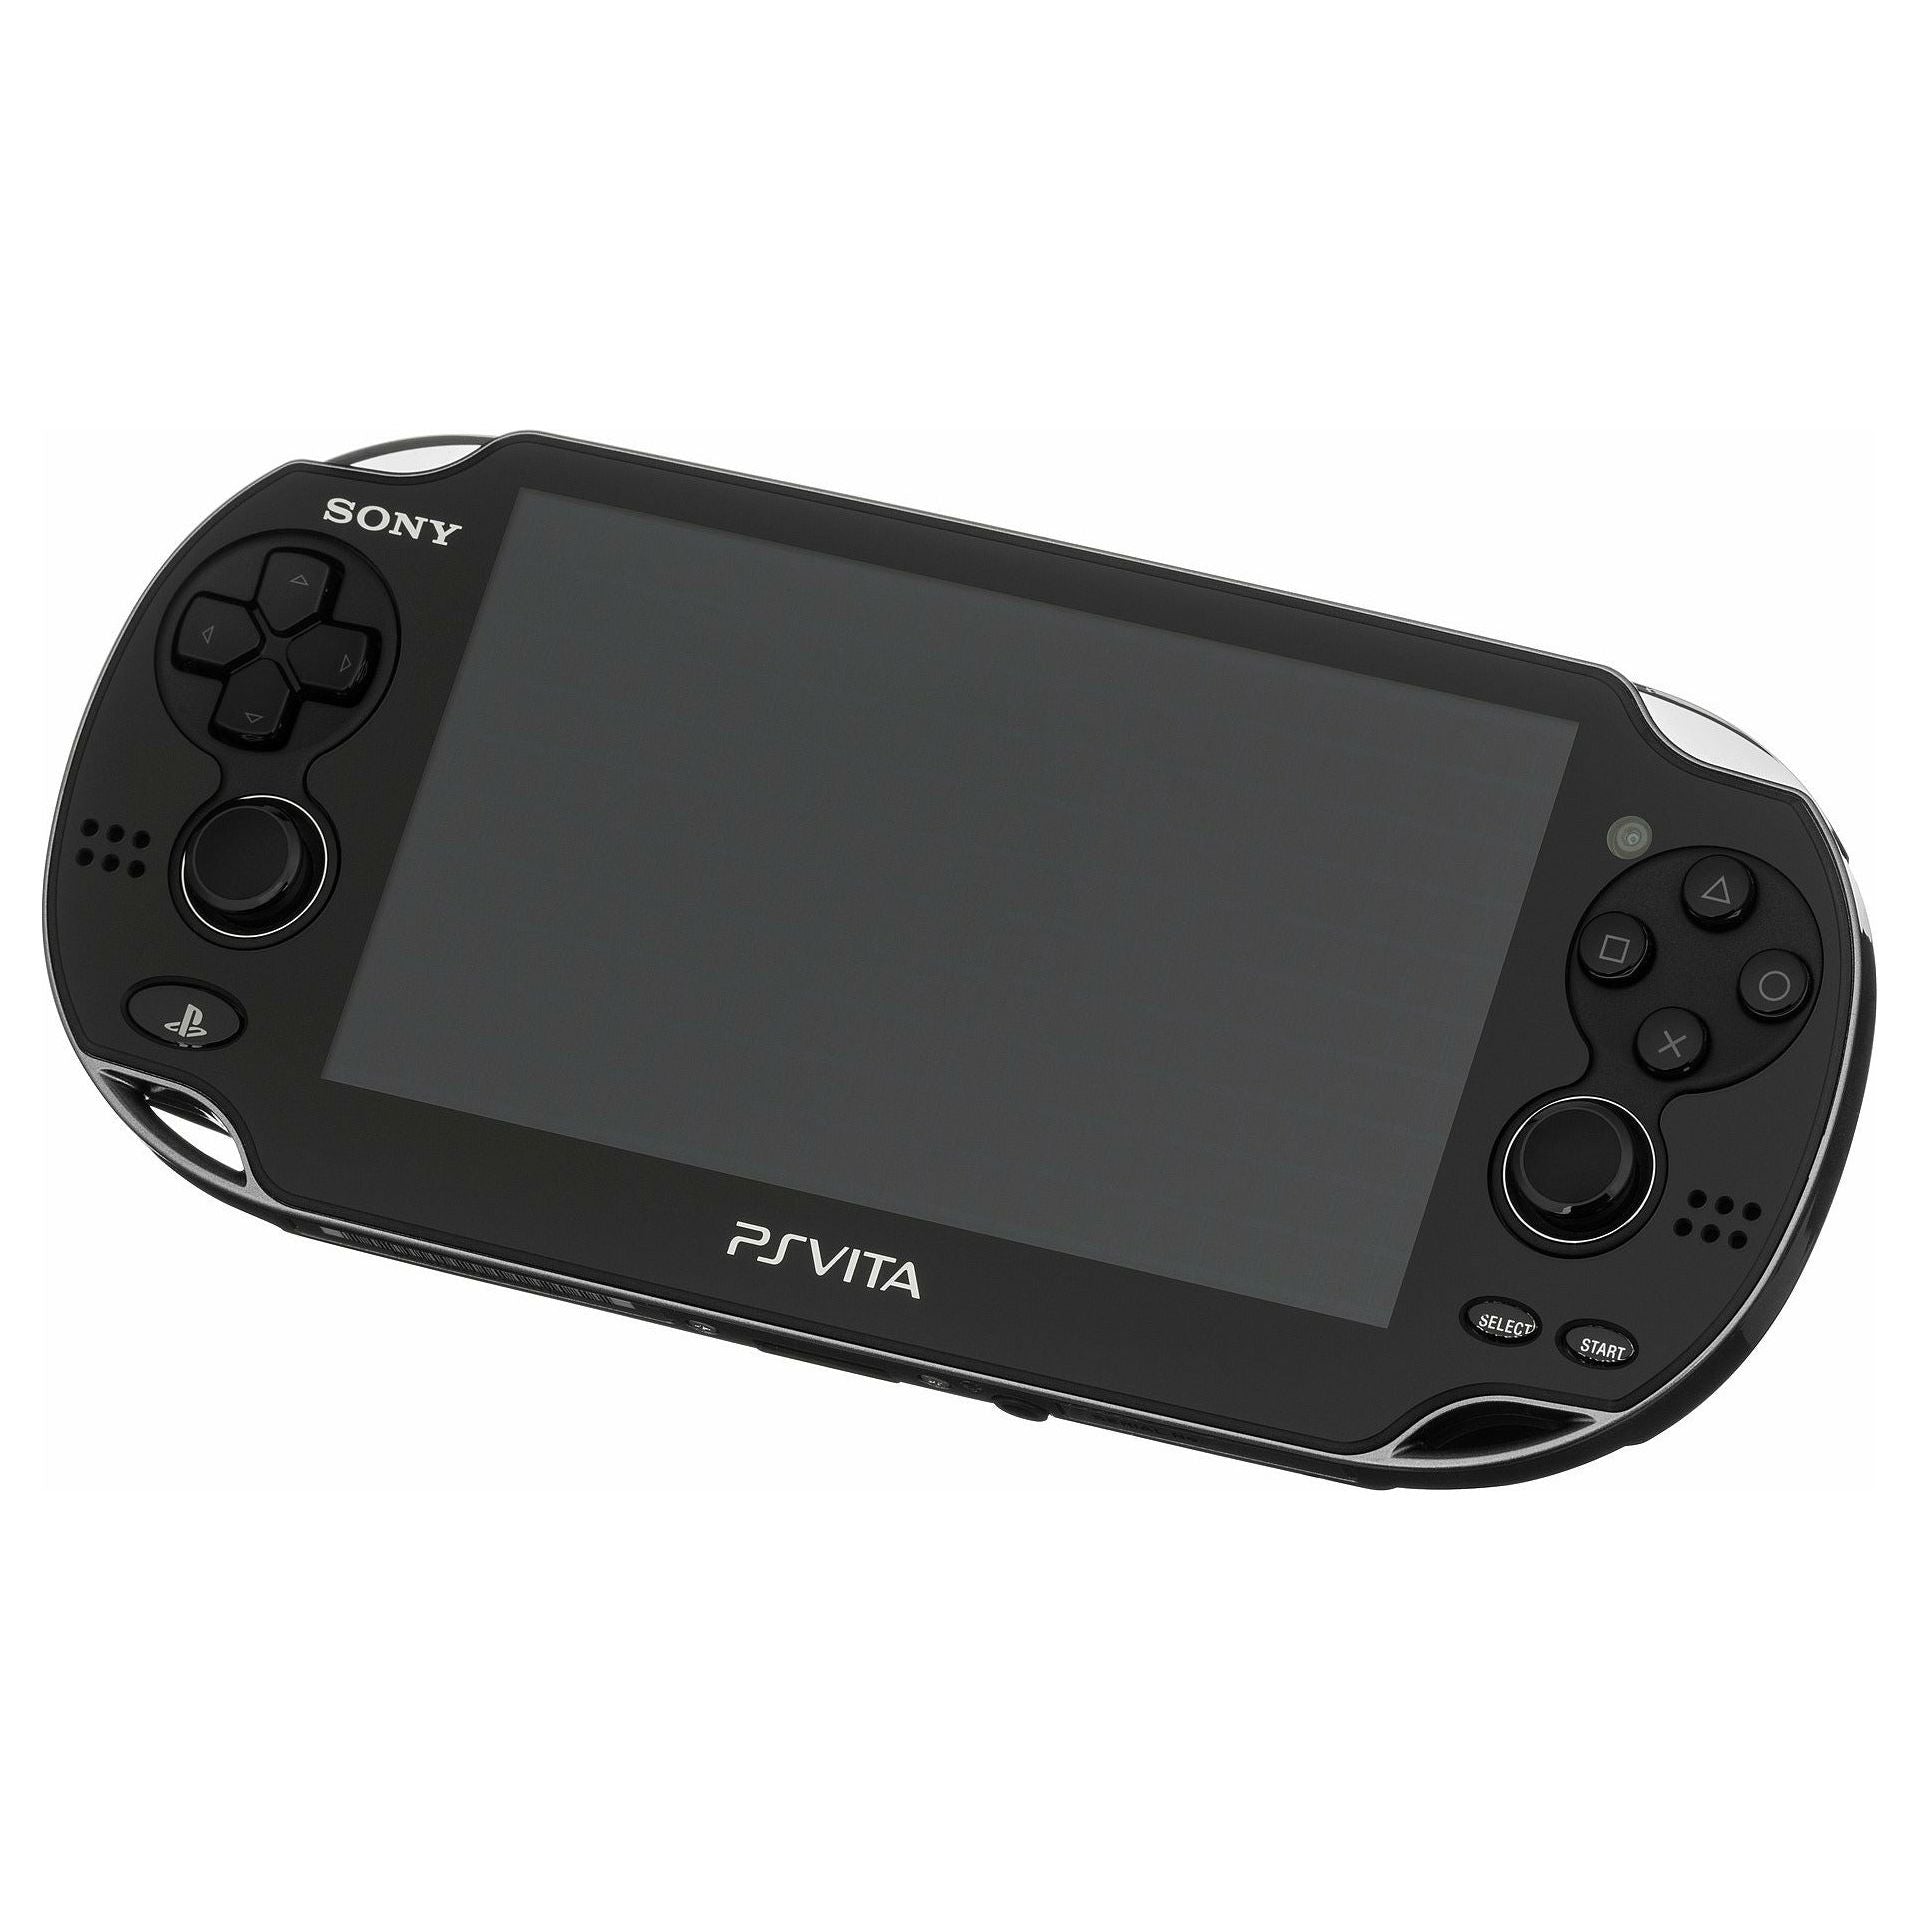 Système PS Vita – Modèle 1001 (Noir)